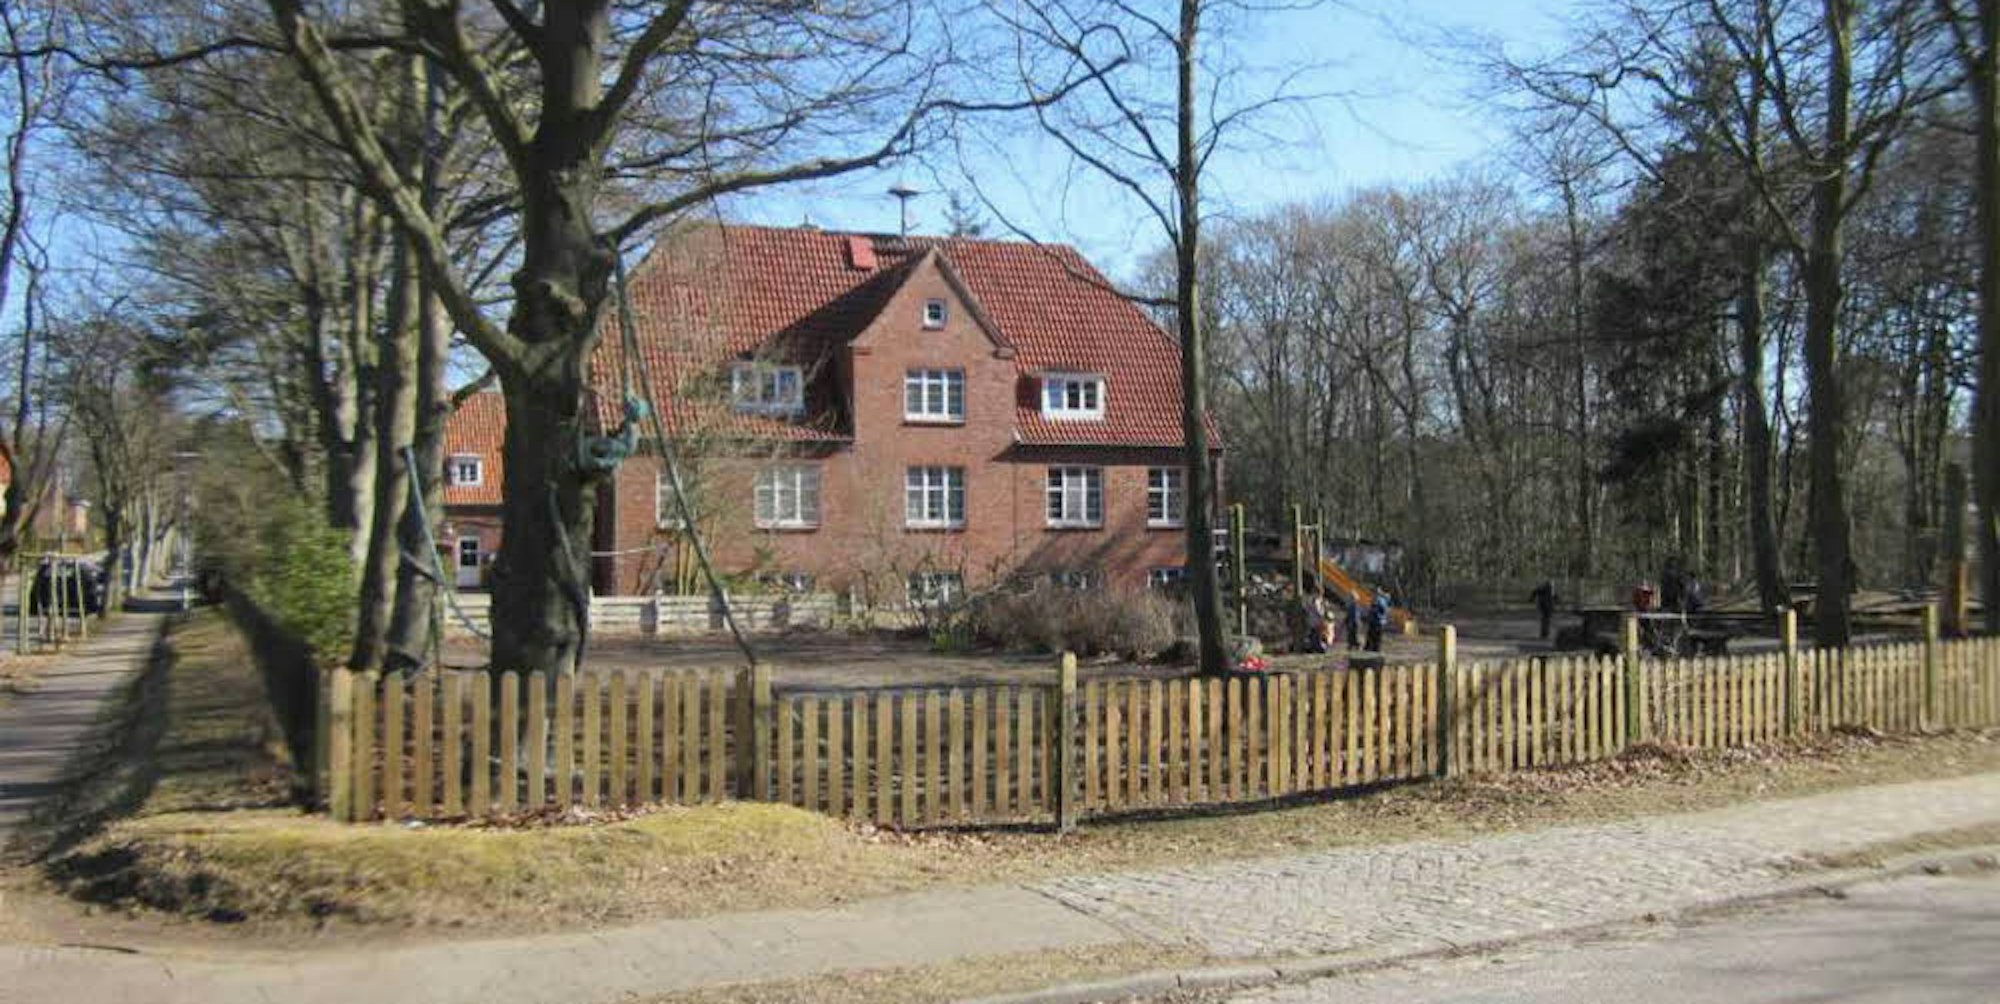 Schmucker Backsteinbau: das ehemalige Landschulheim der Stadt Köln in Wyk auf der Nordsee-Insel Föhr